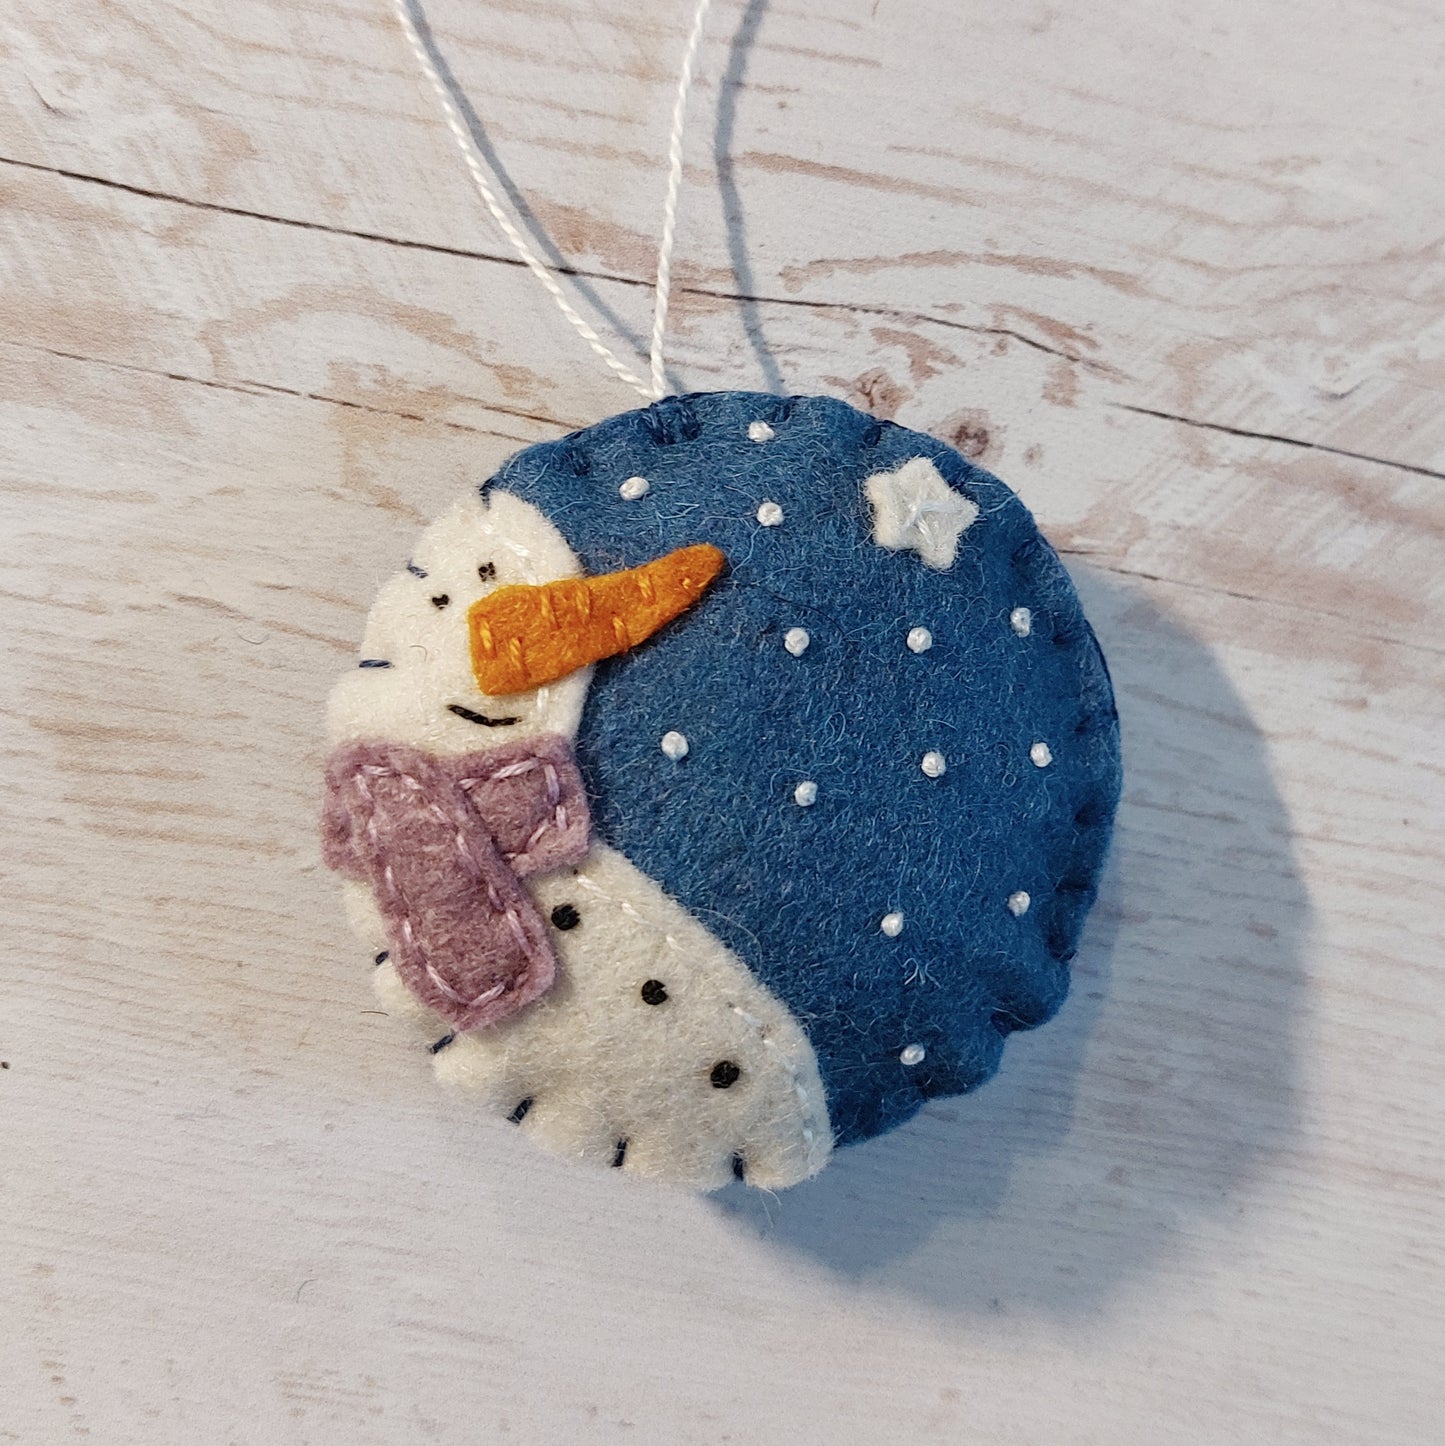 Blue bauble ornament with snowman, felt decoration